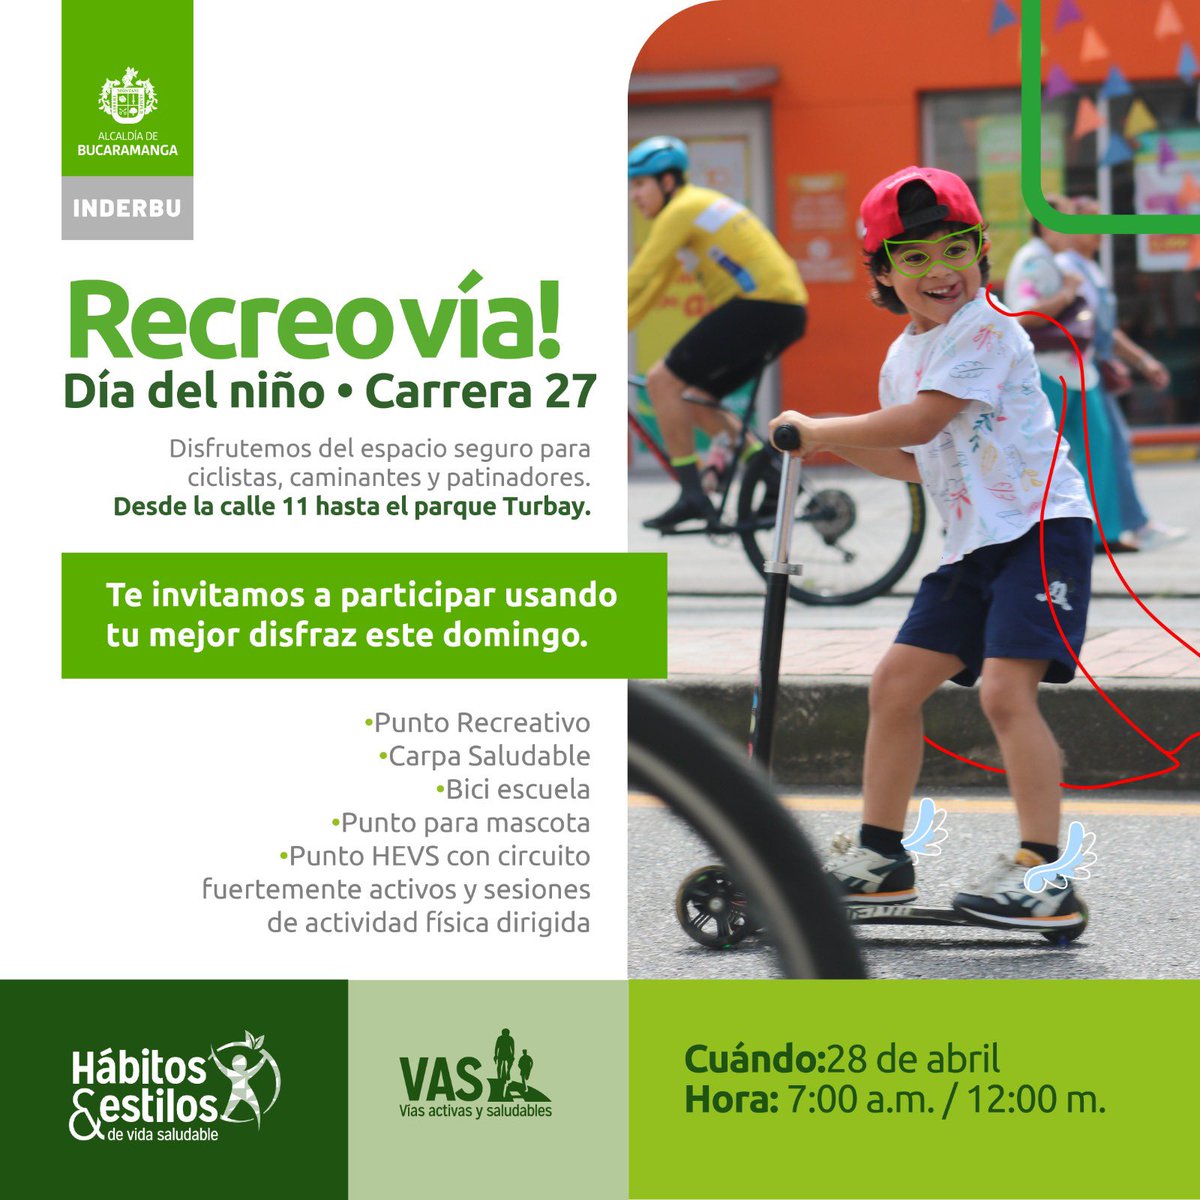 #Recreovía de disfraces! 🎉
Hoy  #Domingo #28DeAbril 
 La recreovía celebra  el día del niño con puntos recreativos, espacios para mascotas, baile, actividad física, música y diversión. 
En la carrera 27 #Bucaramanga 
@somosinderbu @AlcaldiaBGA